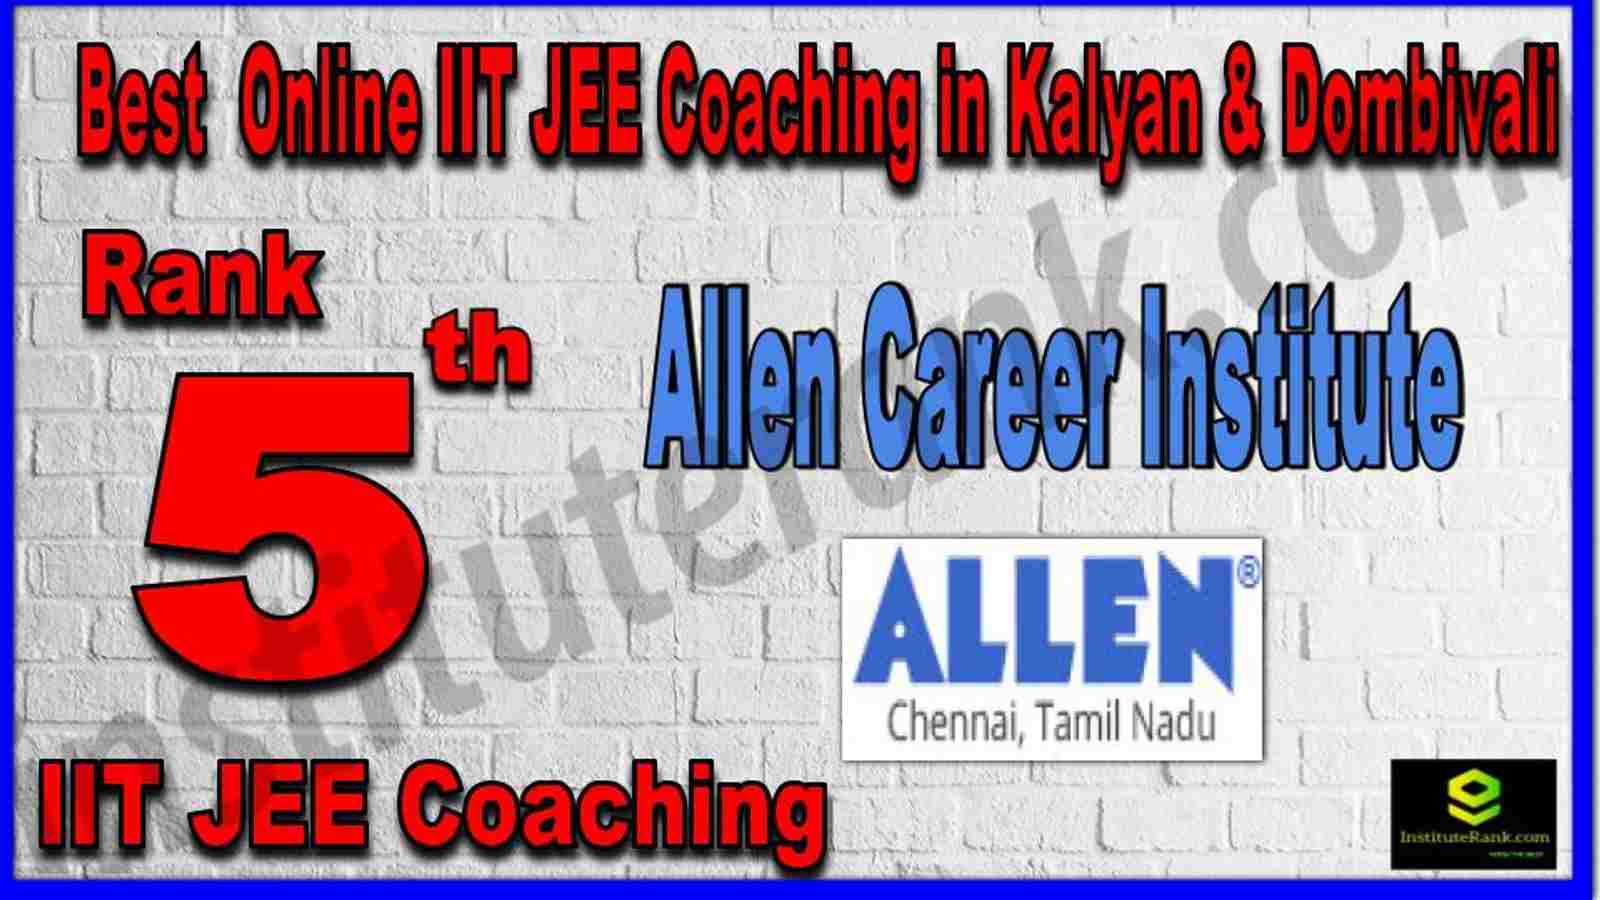 Rank 5th Best Online IIT JEE Coaching in Kalyan & Dombivali 